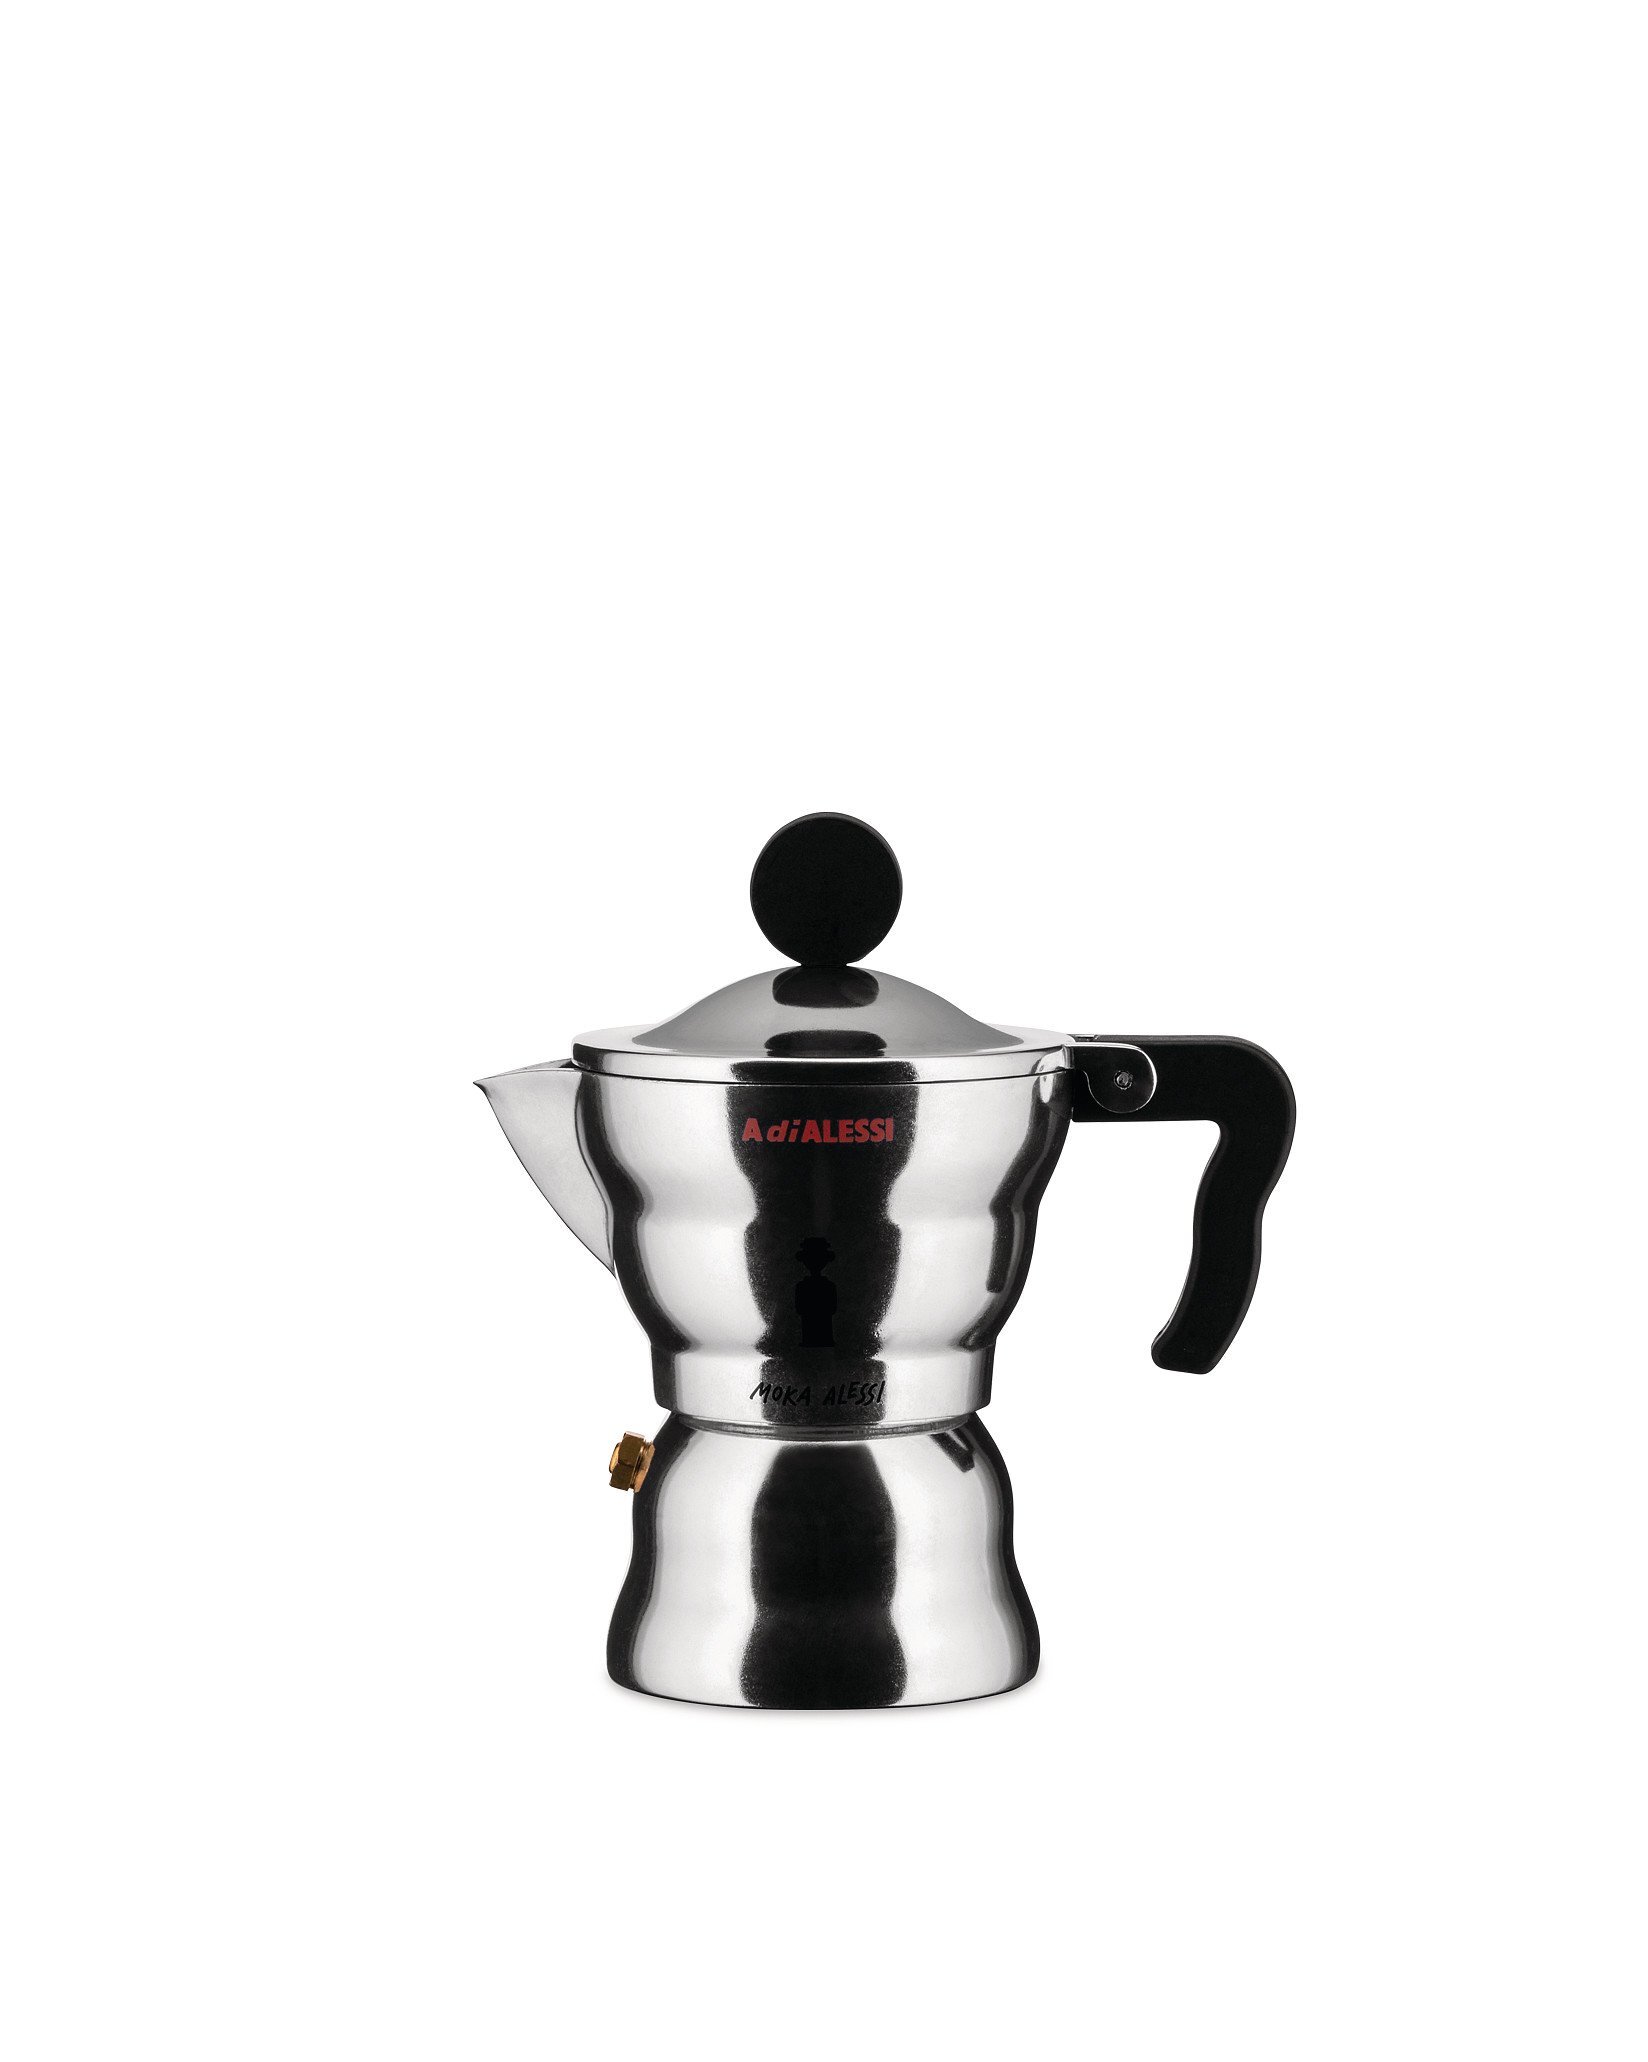 https://assets.wfcdn.com/im/99470638/compr-r85/1670/167065281/moka-espresso-coffee-maker.jpg